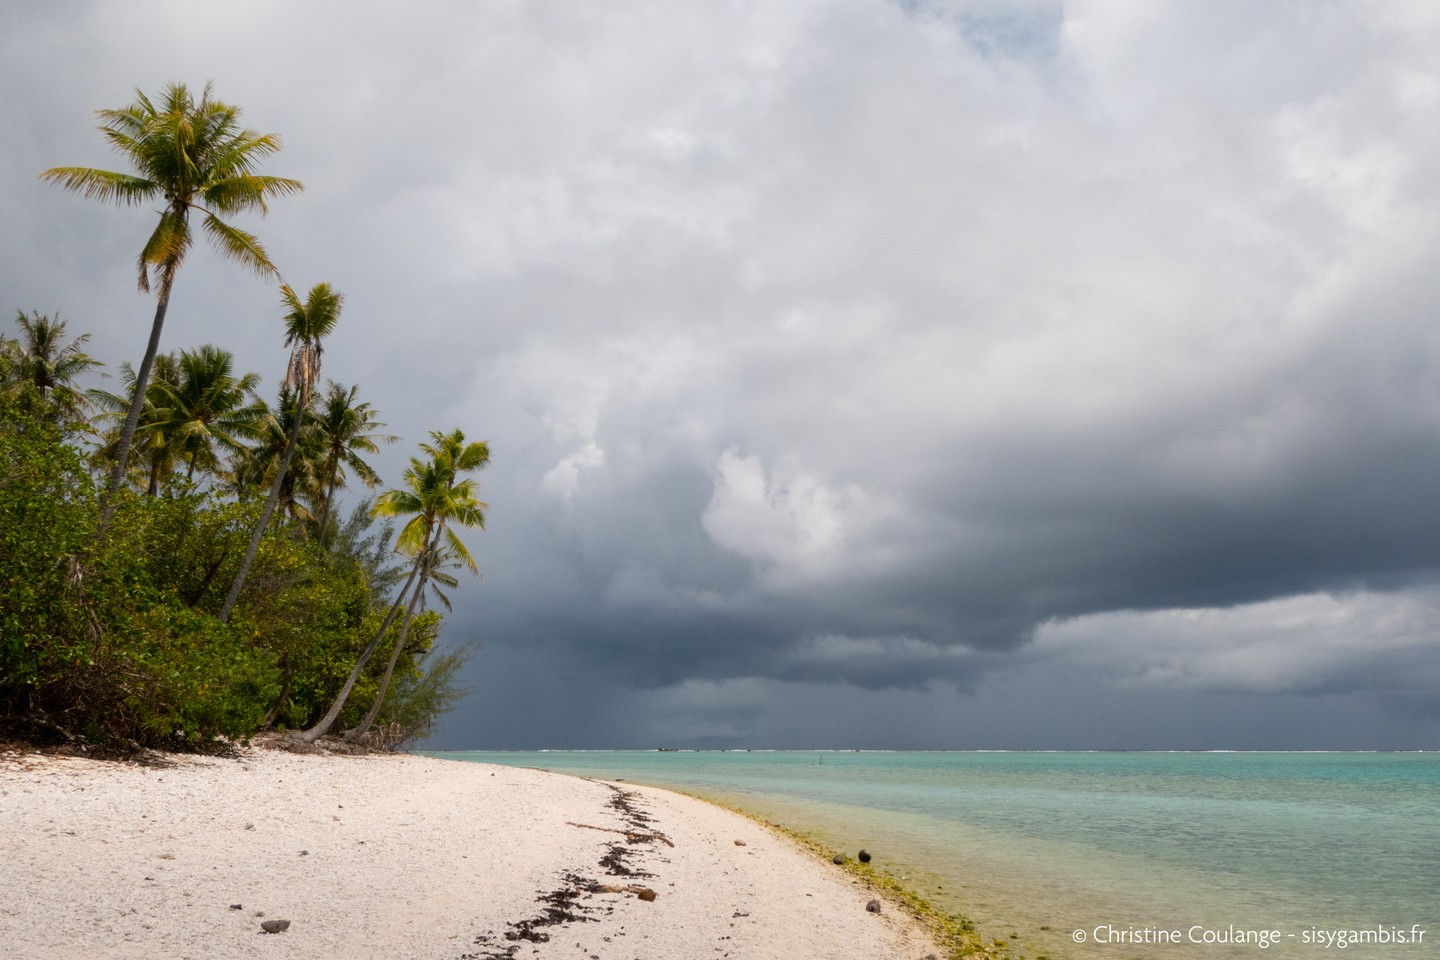 Les îles sous le vent, Pacifique Sud🏝️
.
.
.
#polynesie #polynesiefrancaise #borabora #island #travel #voyage #travelpho